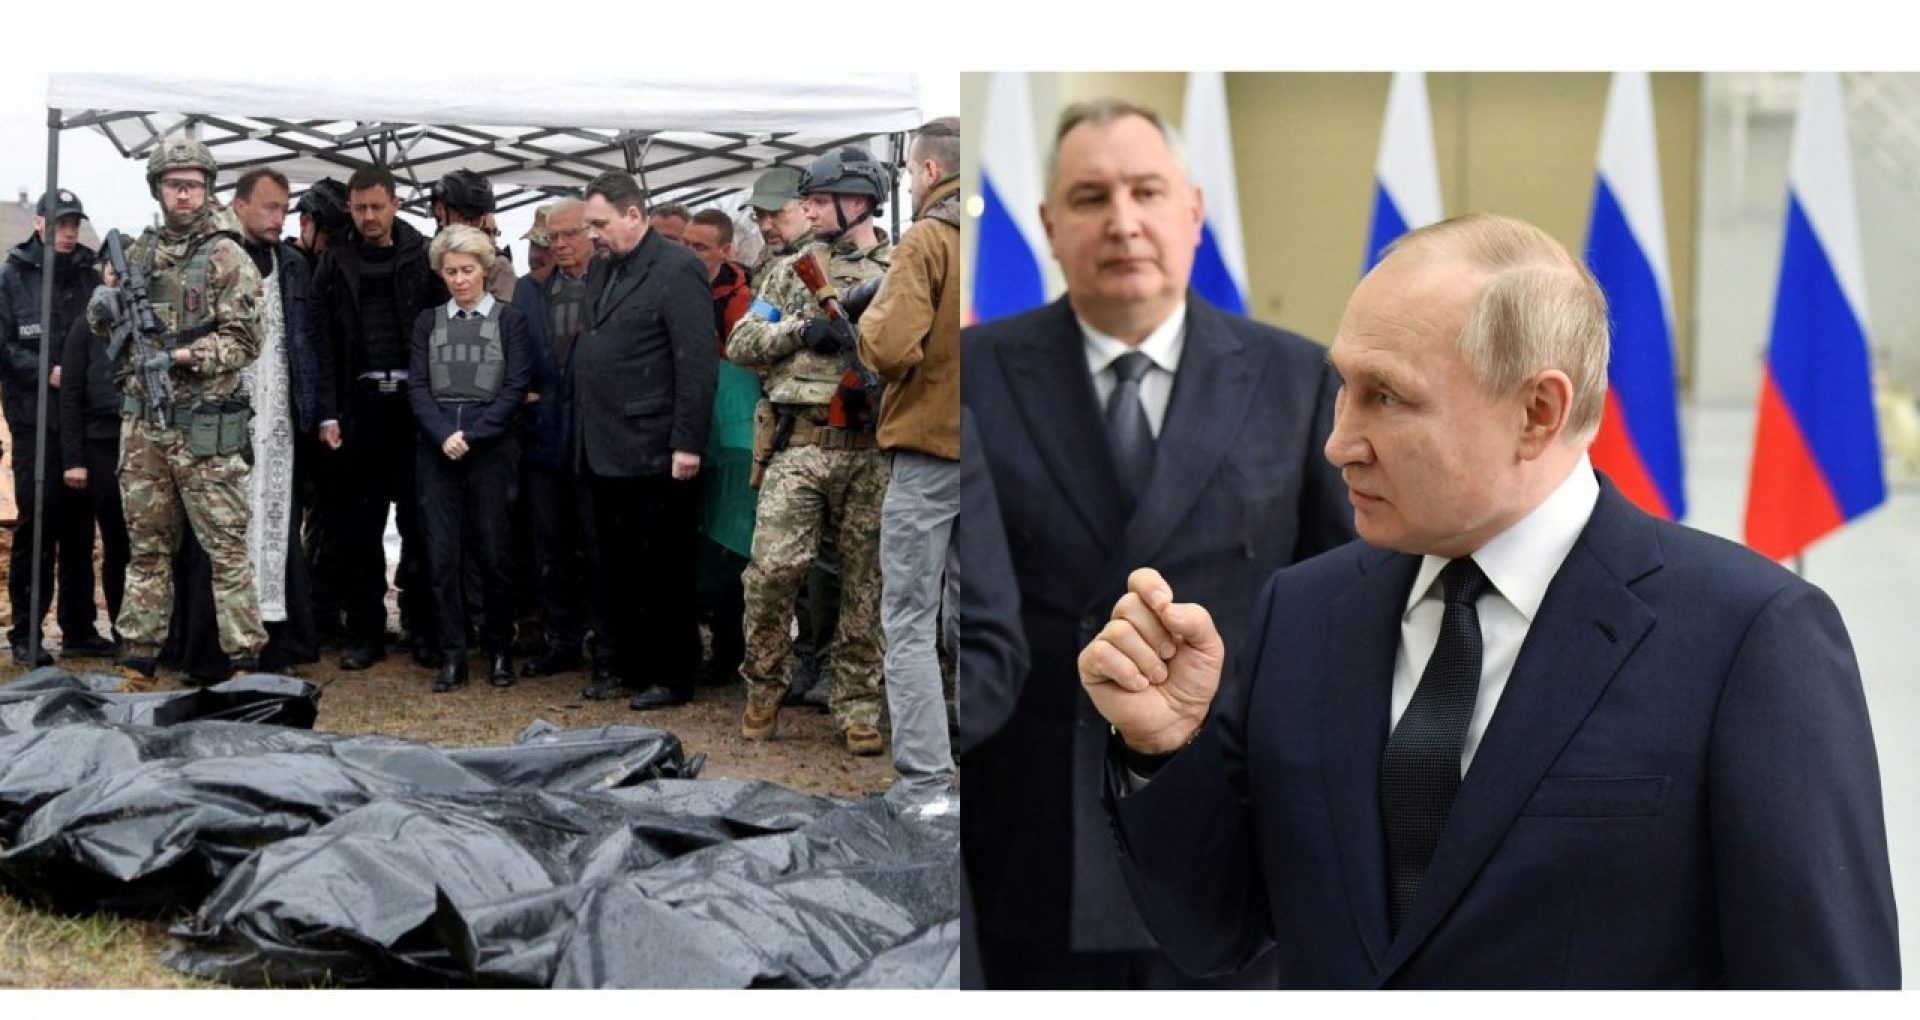 „Război și falsuri” – Kremlinul neagă responsabilitatea pentru atrocitățile de la Bucea